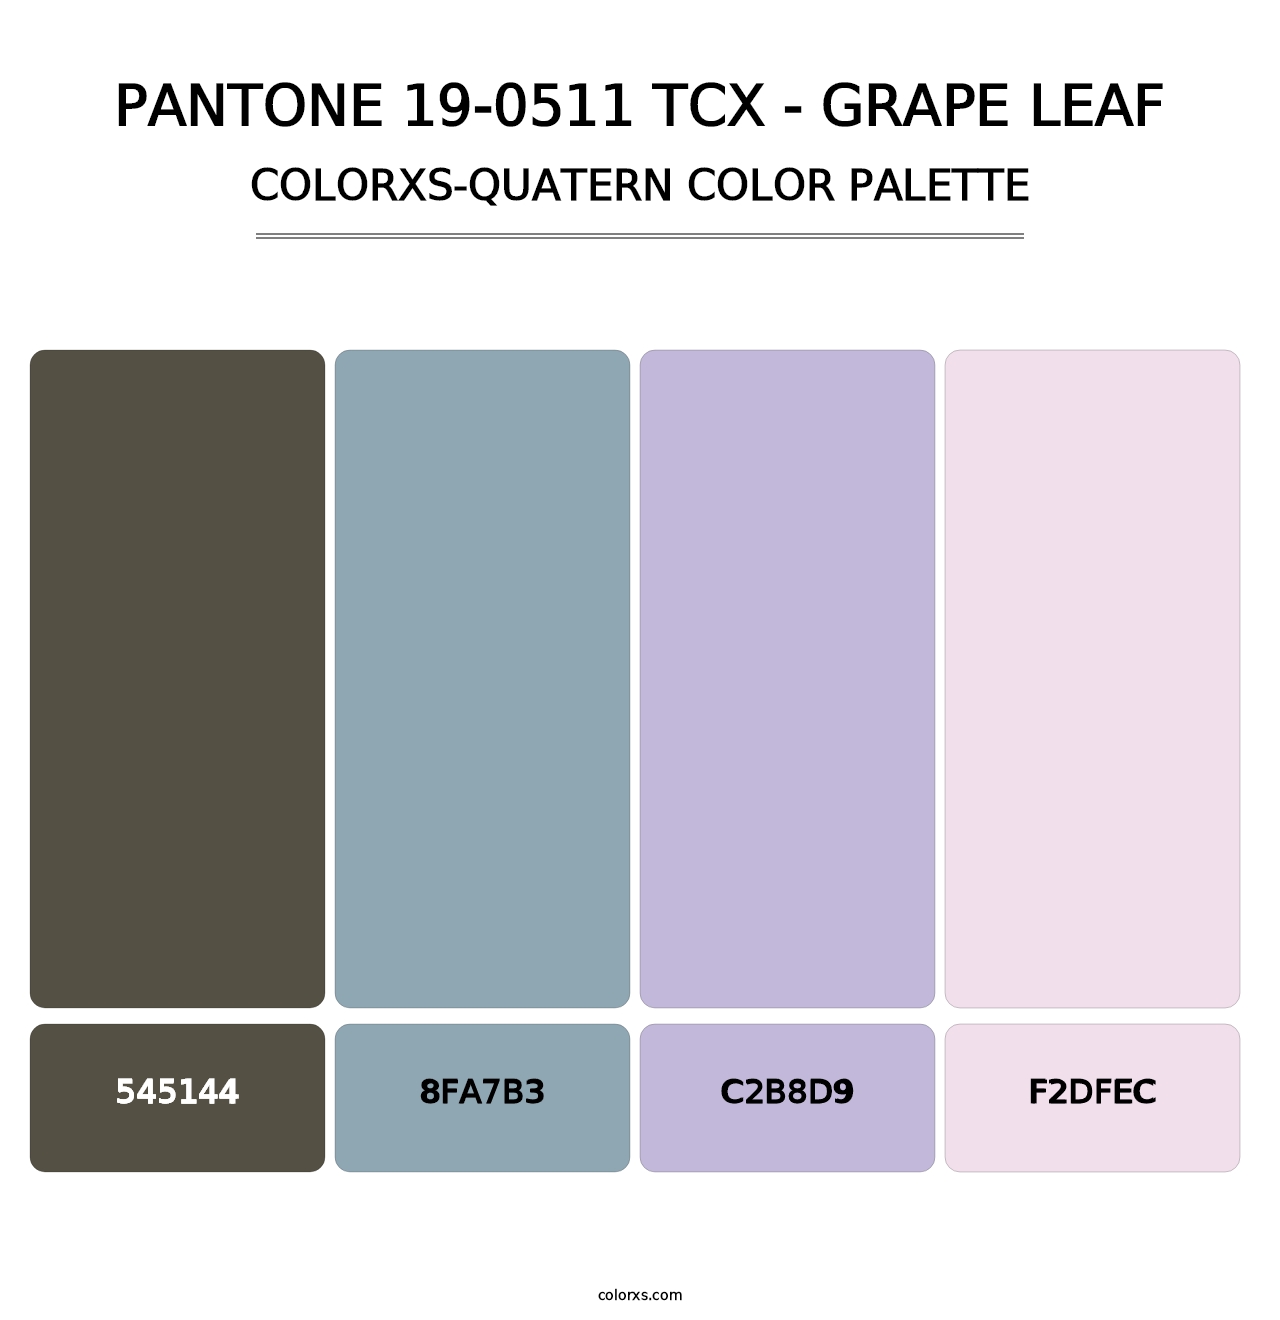 PANTONE 19-0511 TCX - Grape Leaf - Colorxs Quatern Palette